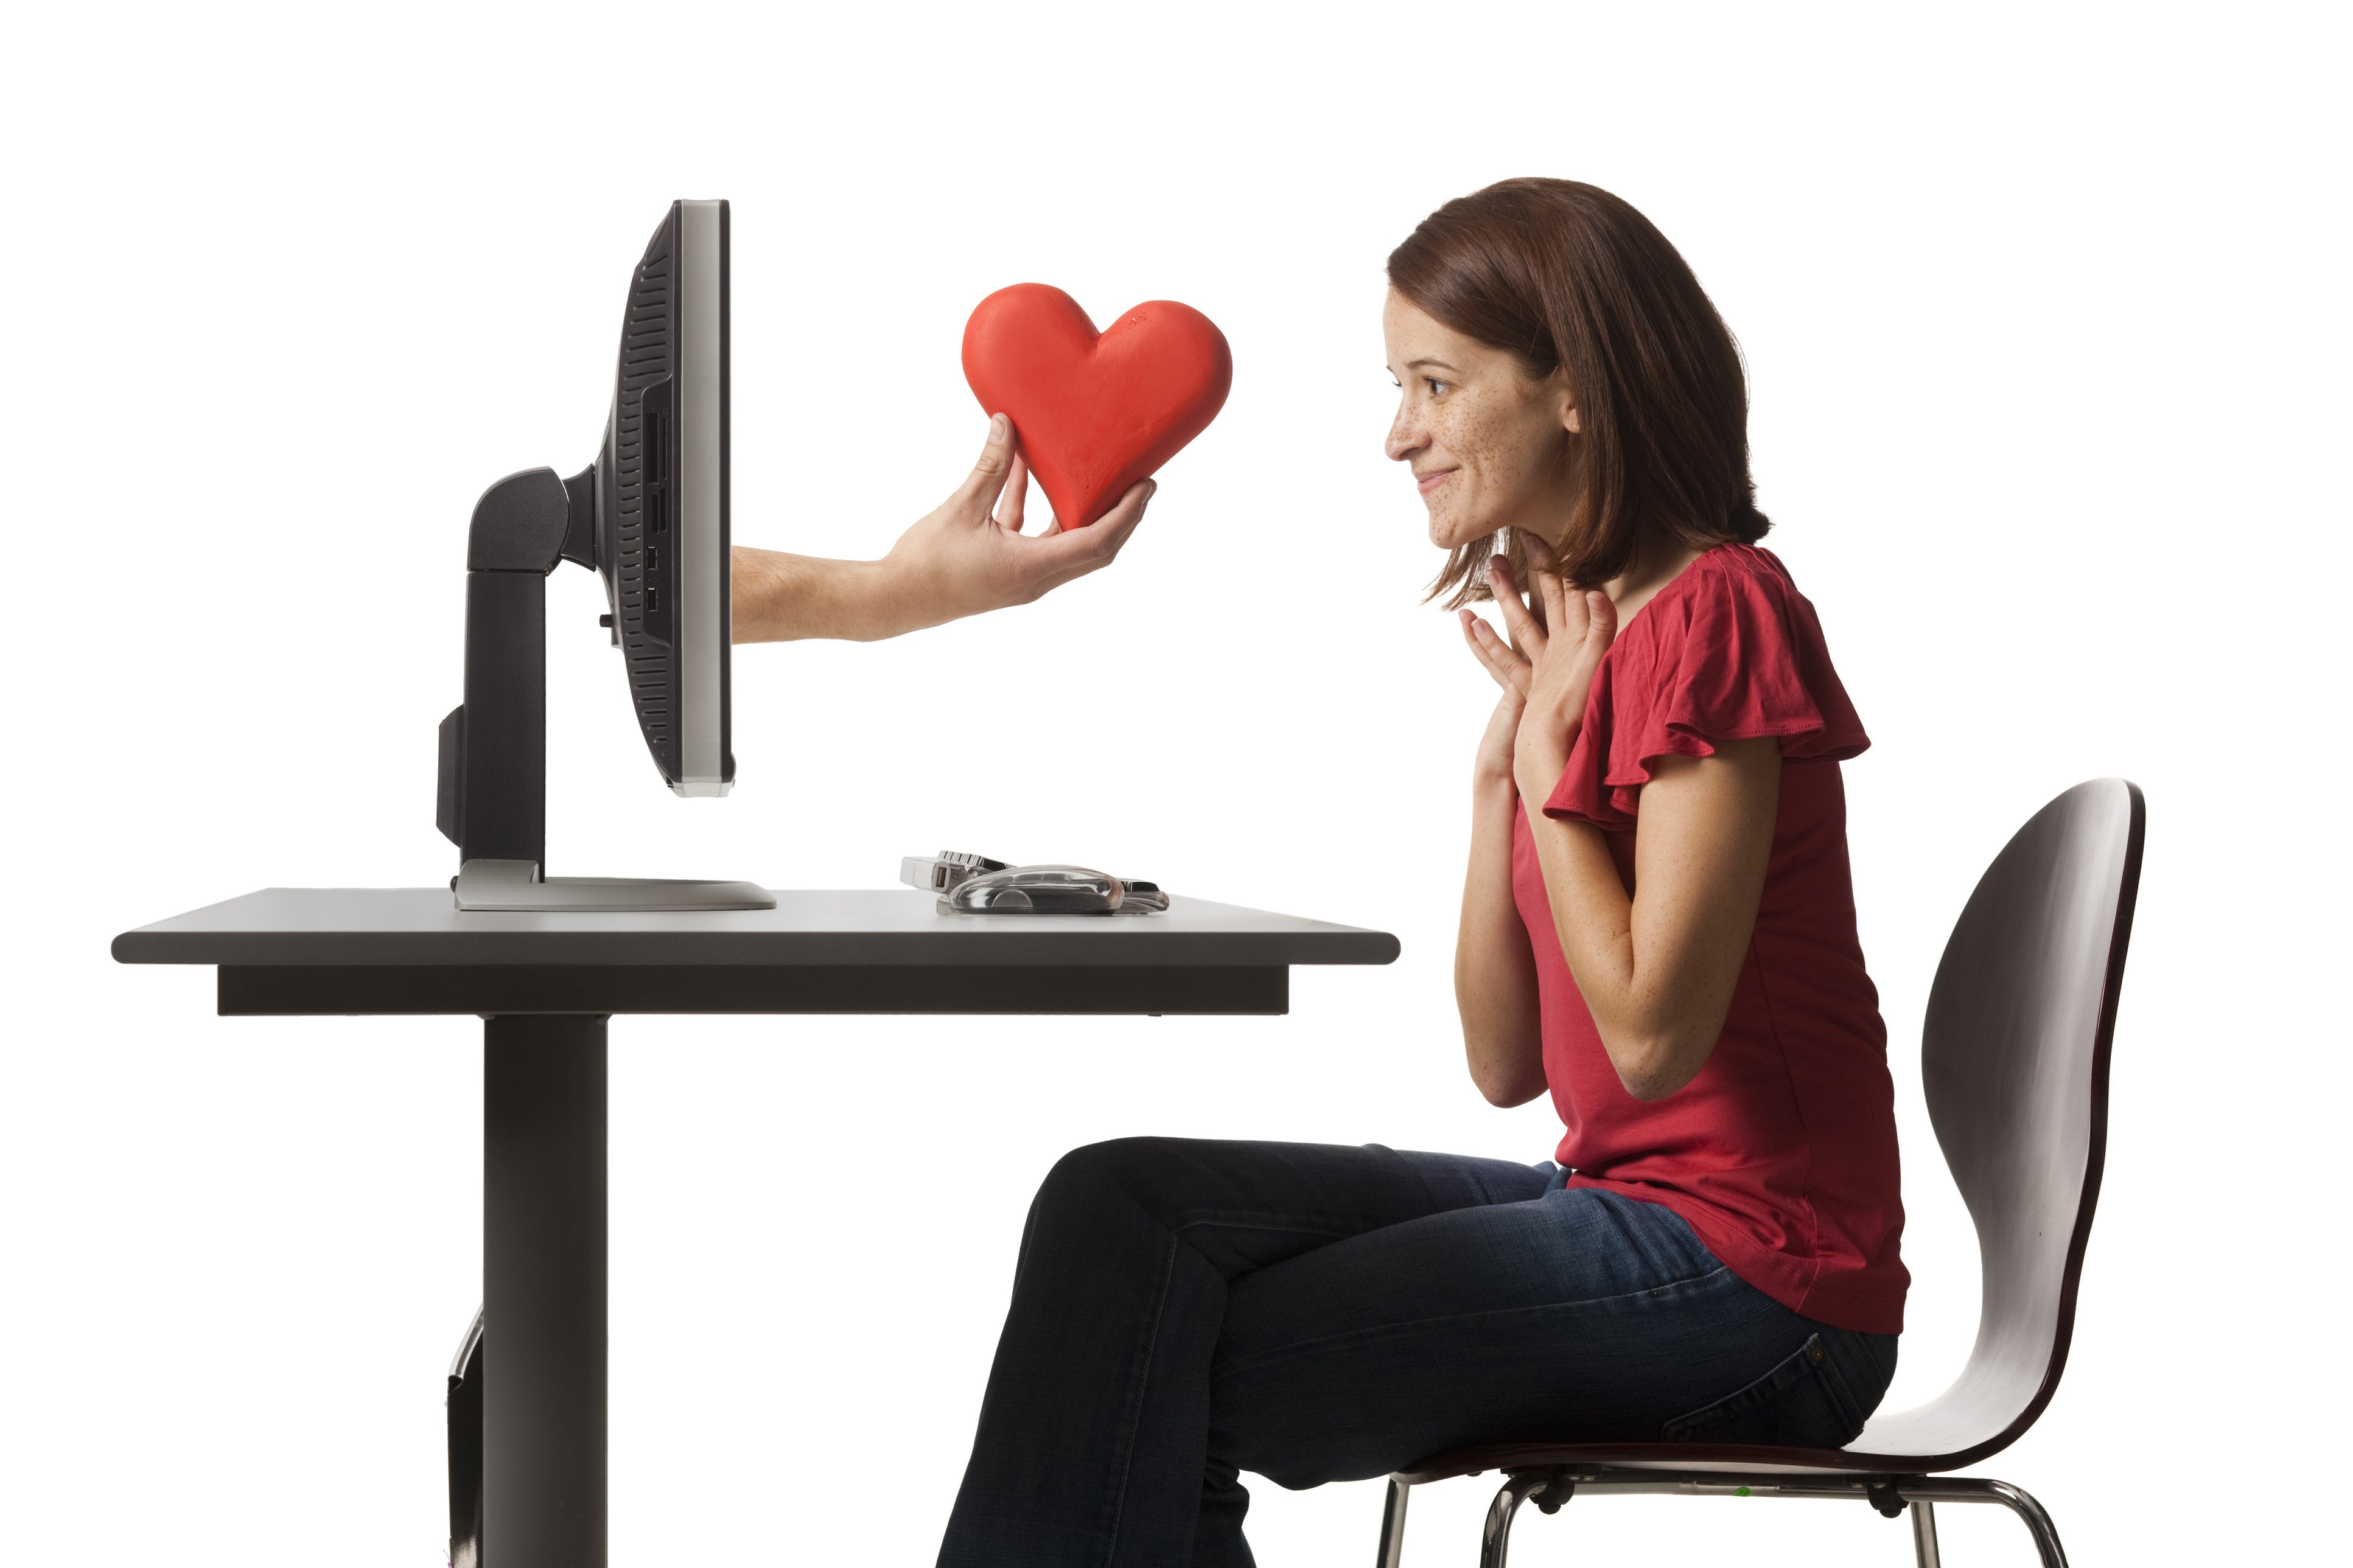 Сайт знакомств флирт найти свою любовь. Мужчина и женщина в интернете. Интернет любовь. Разговор в интернете. Виртуальное общение.